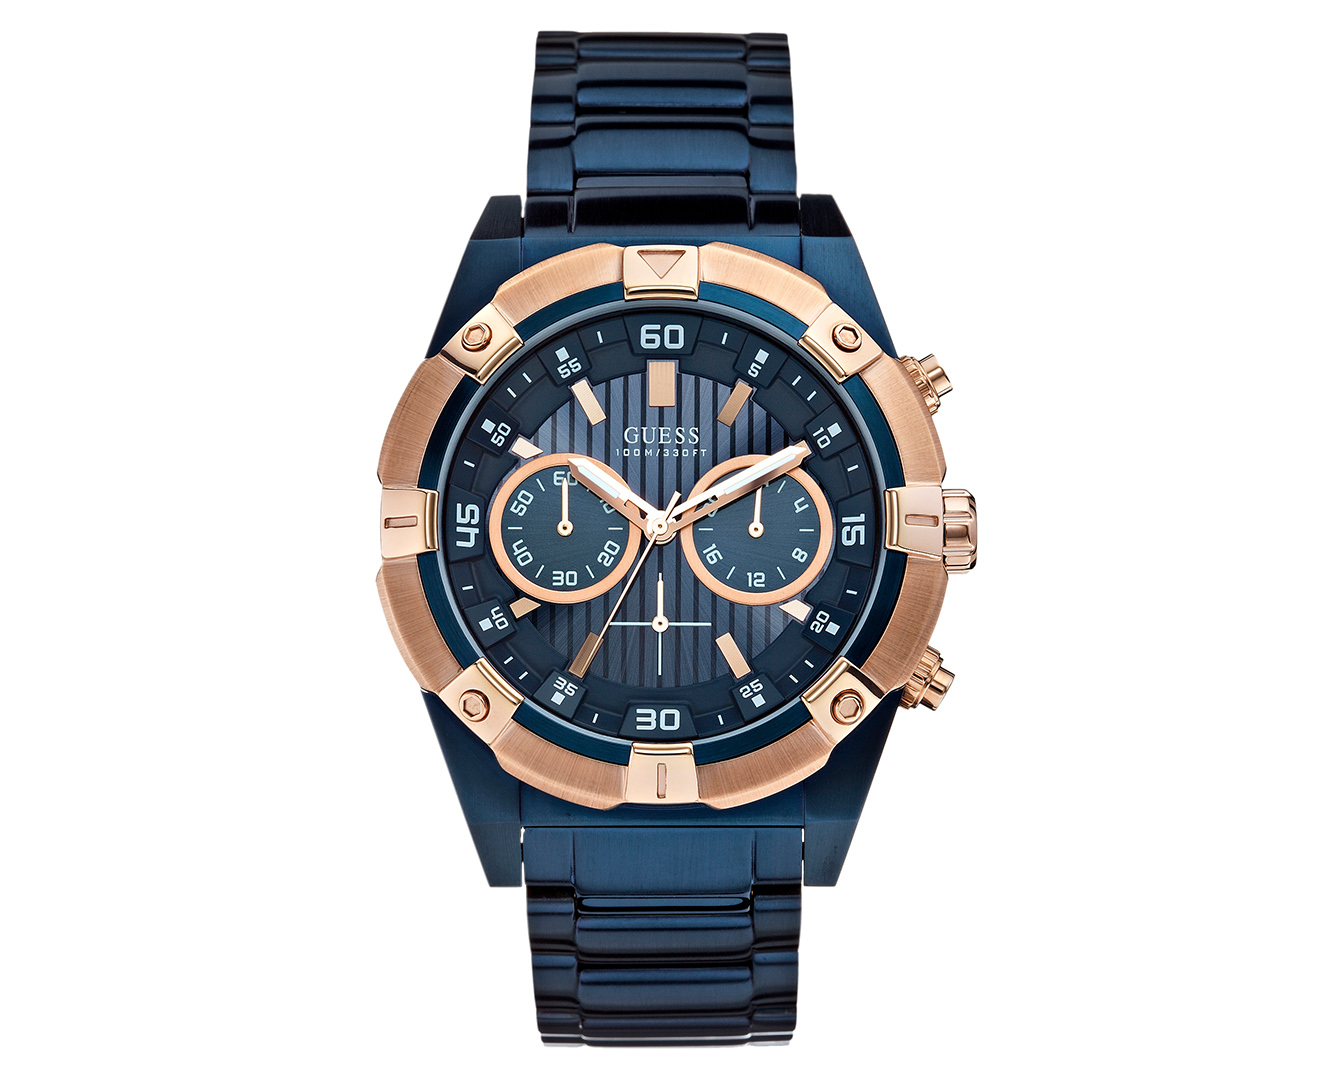 GUESS Men's 49mm Jolt Stainless Steel Watch - Blue/Gold 91661437595 | eBay